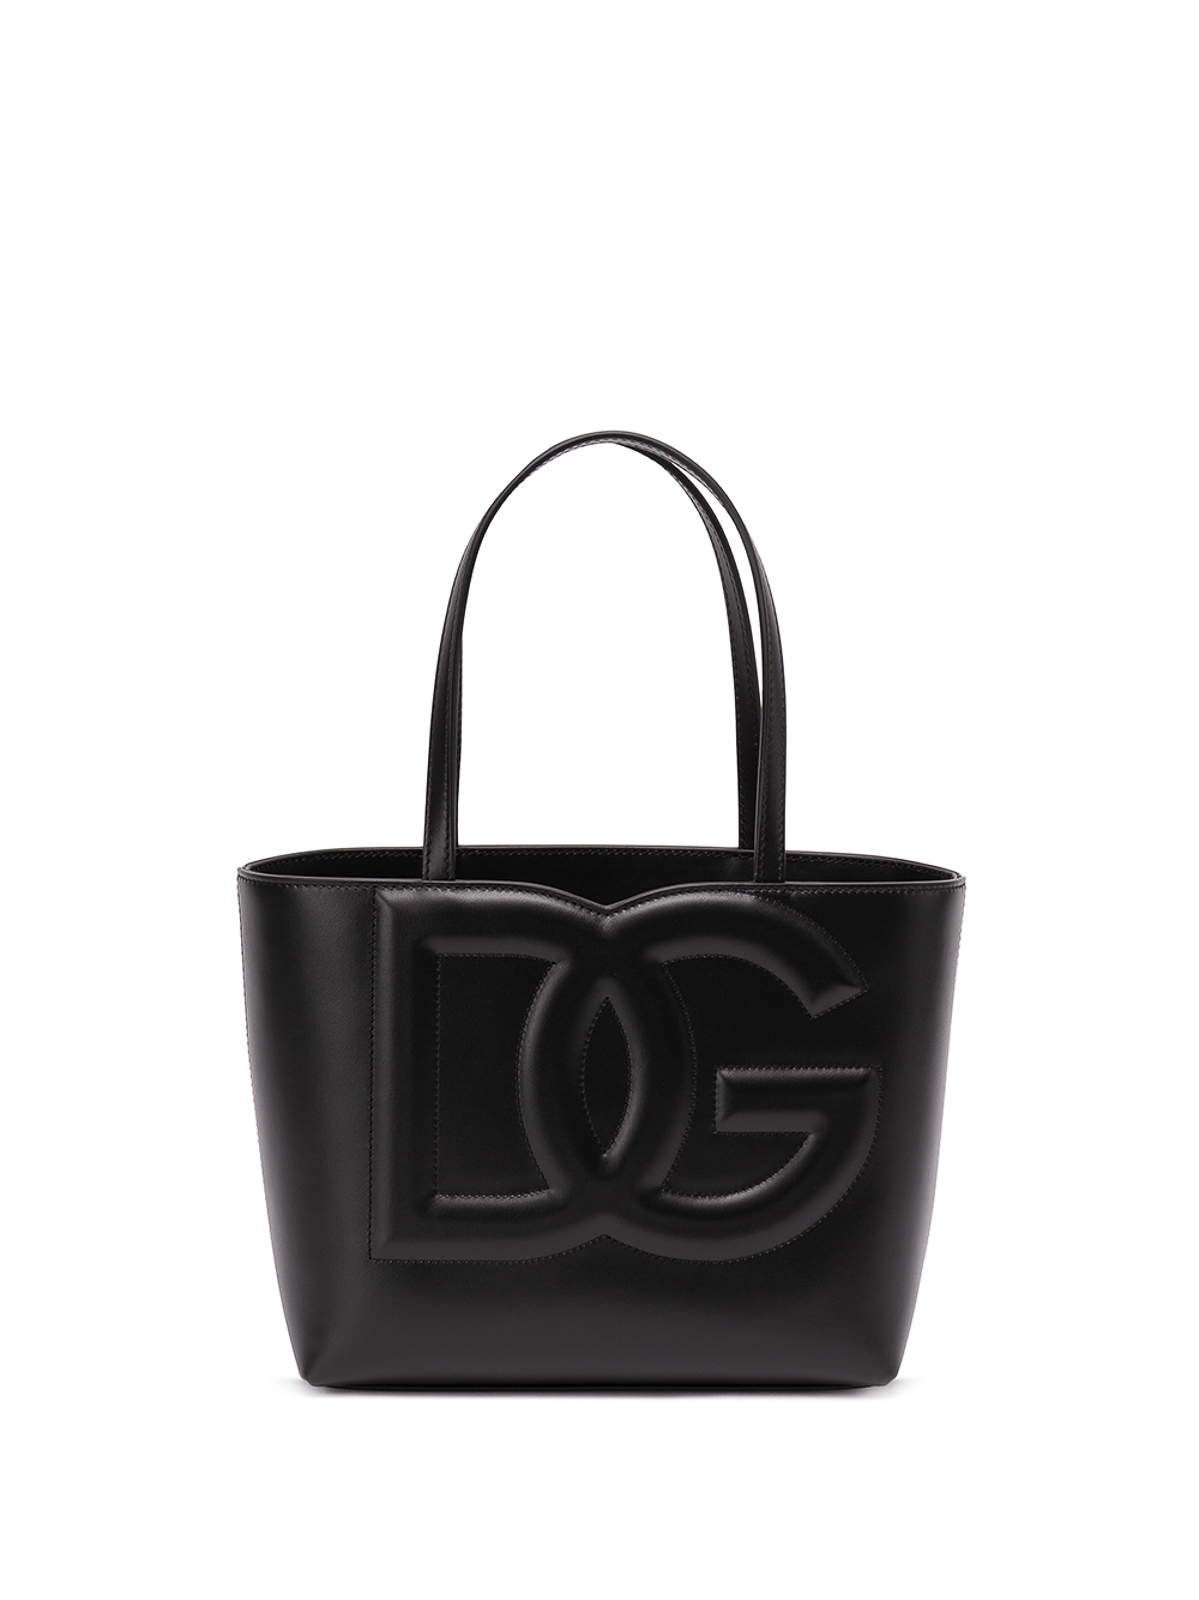 Dolce & Gabbana Logo Tote In Black